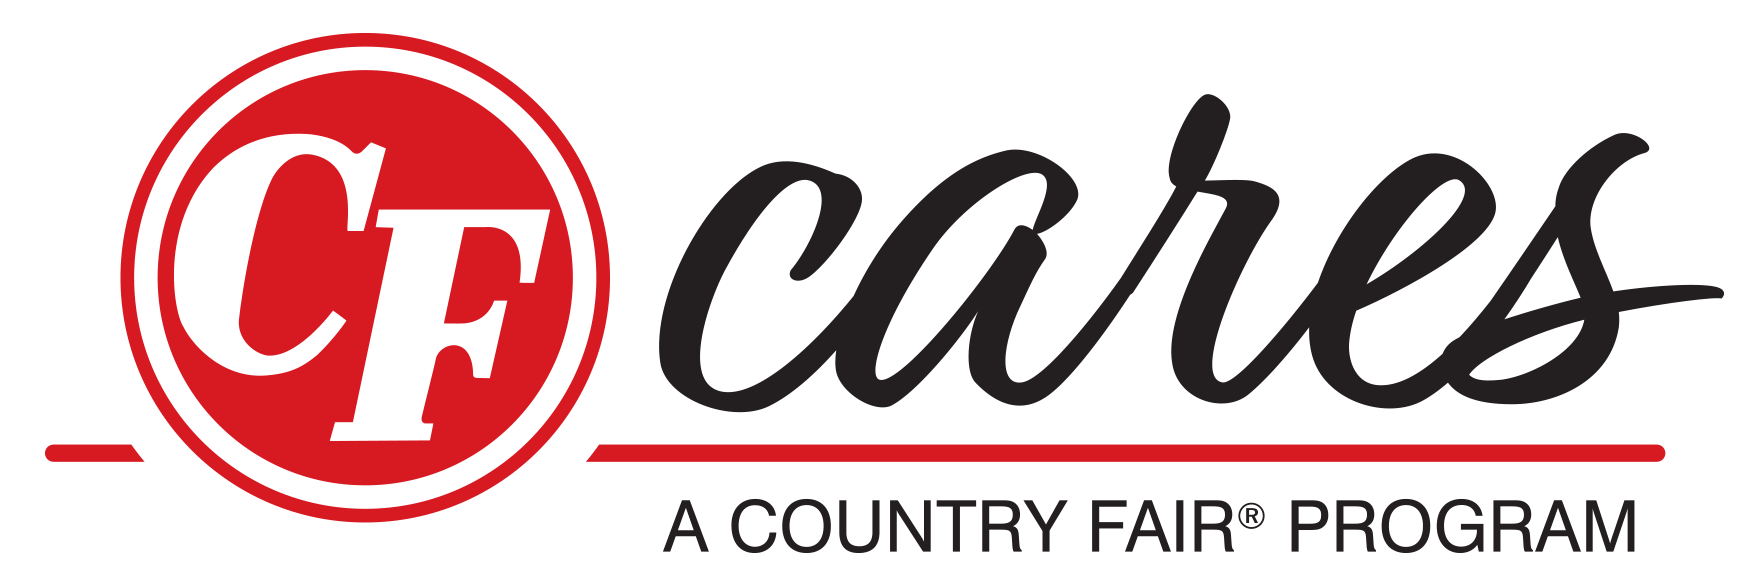 CF Cares Logo